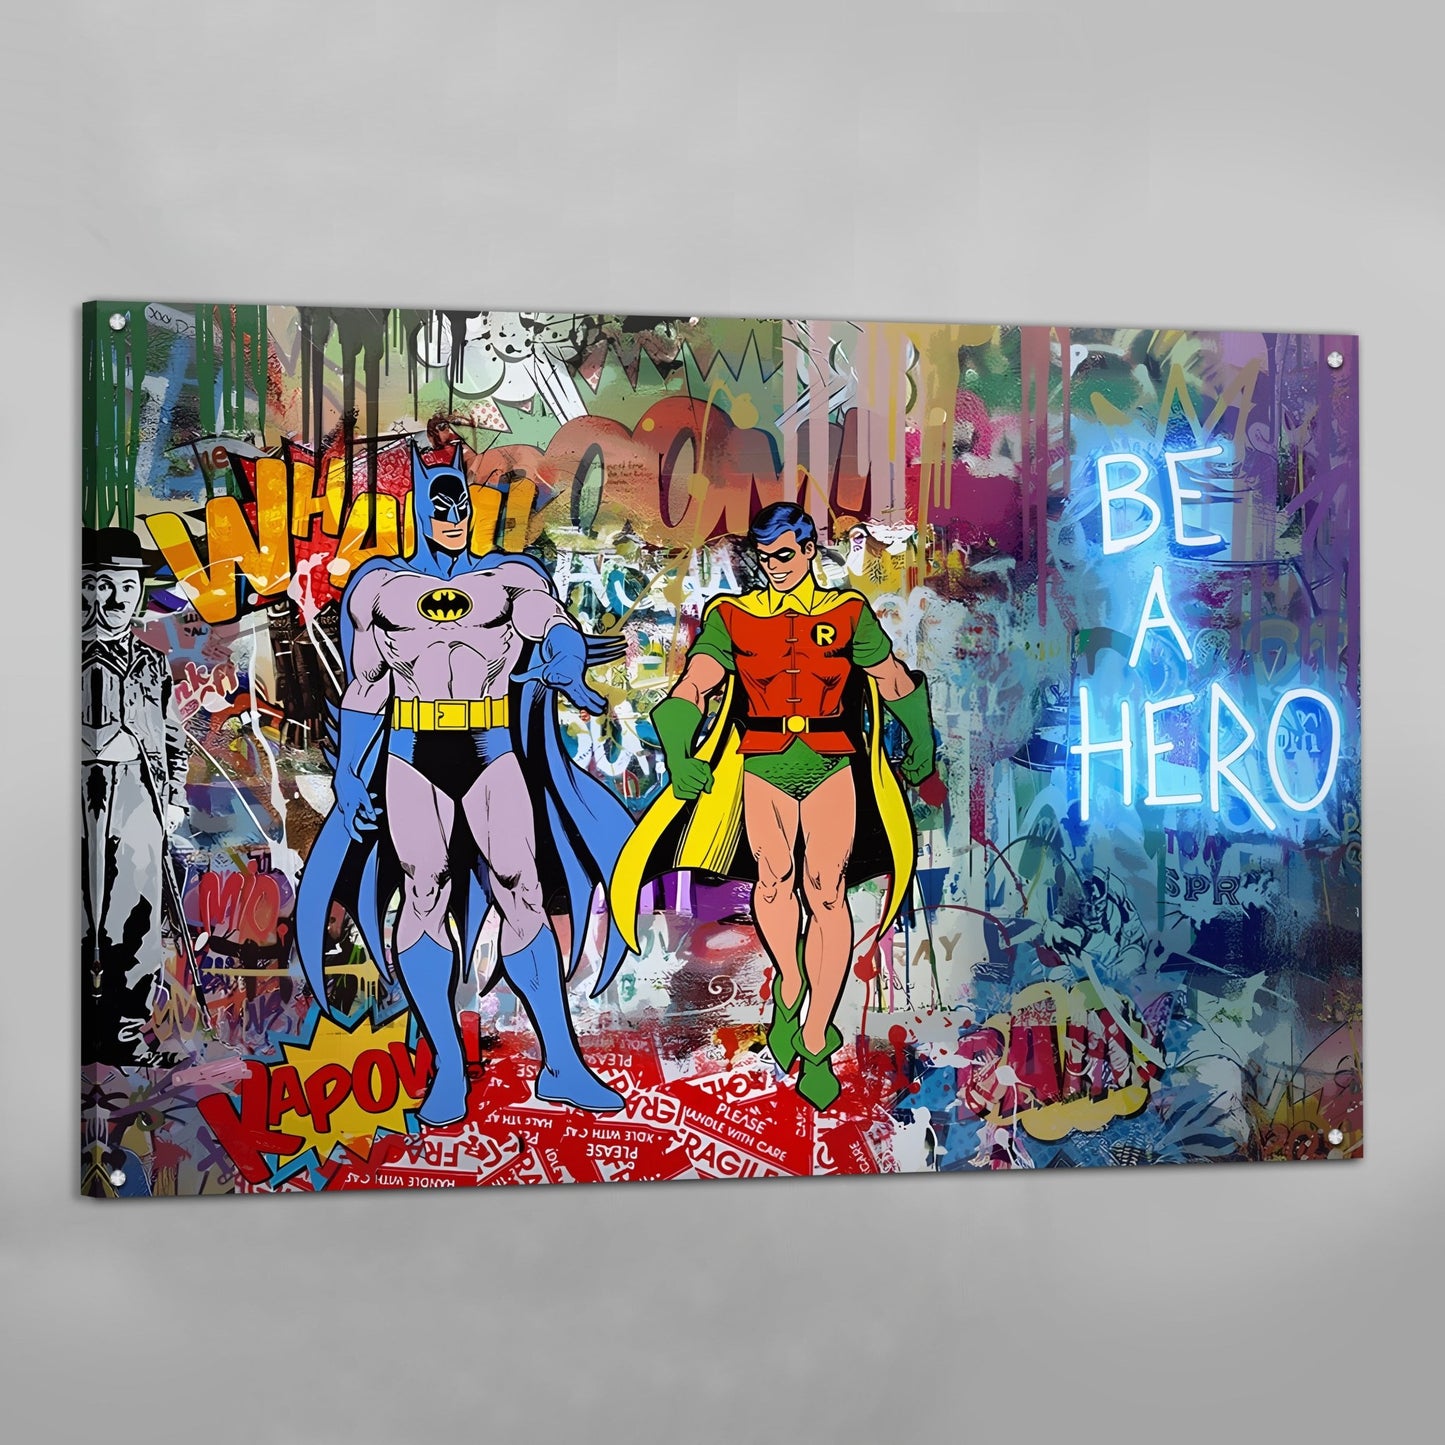 | Wall Graffiti Canvas Art a Be Hero Luxury Art